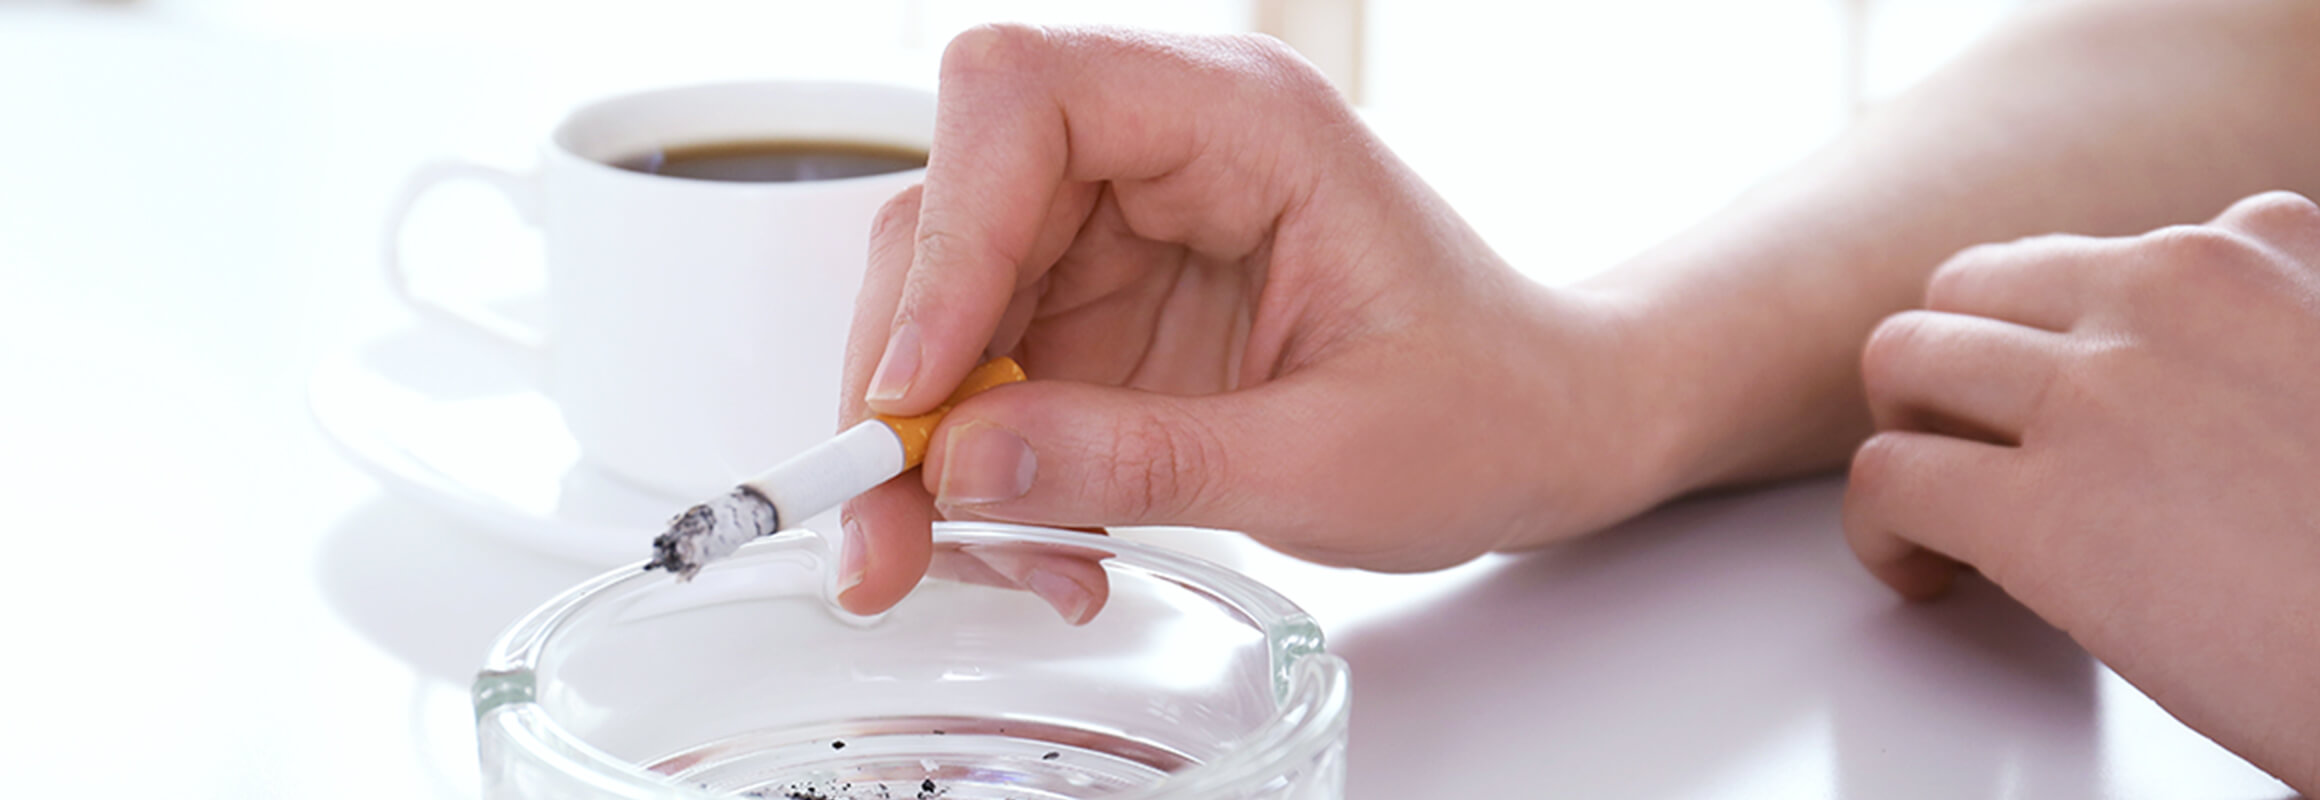 糖尿病や喫煙習慣のある方への歯周病予防